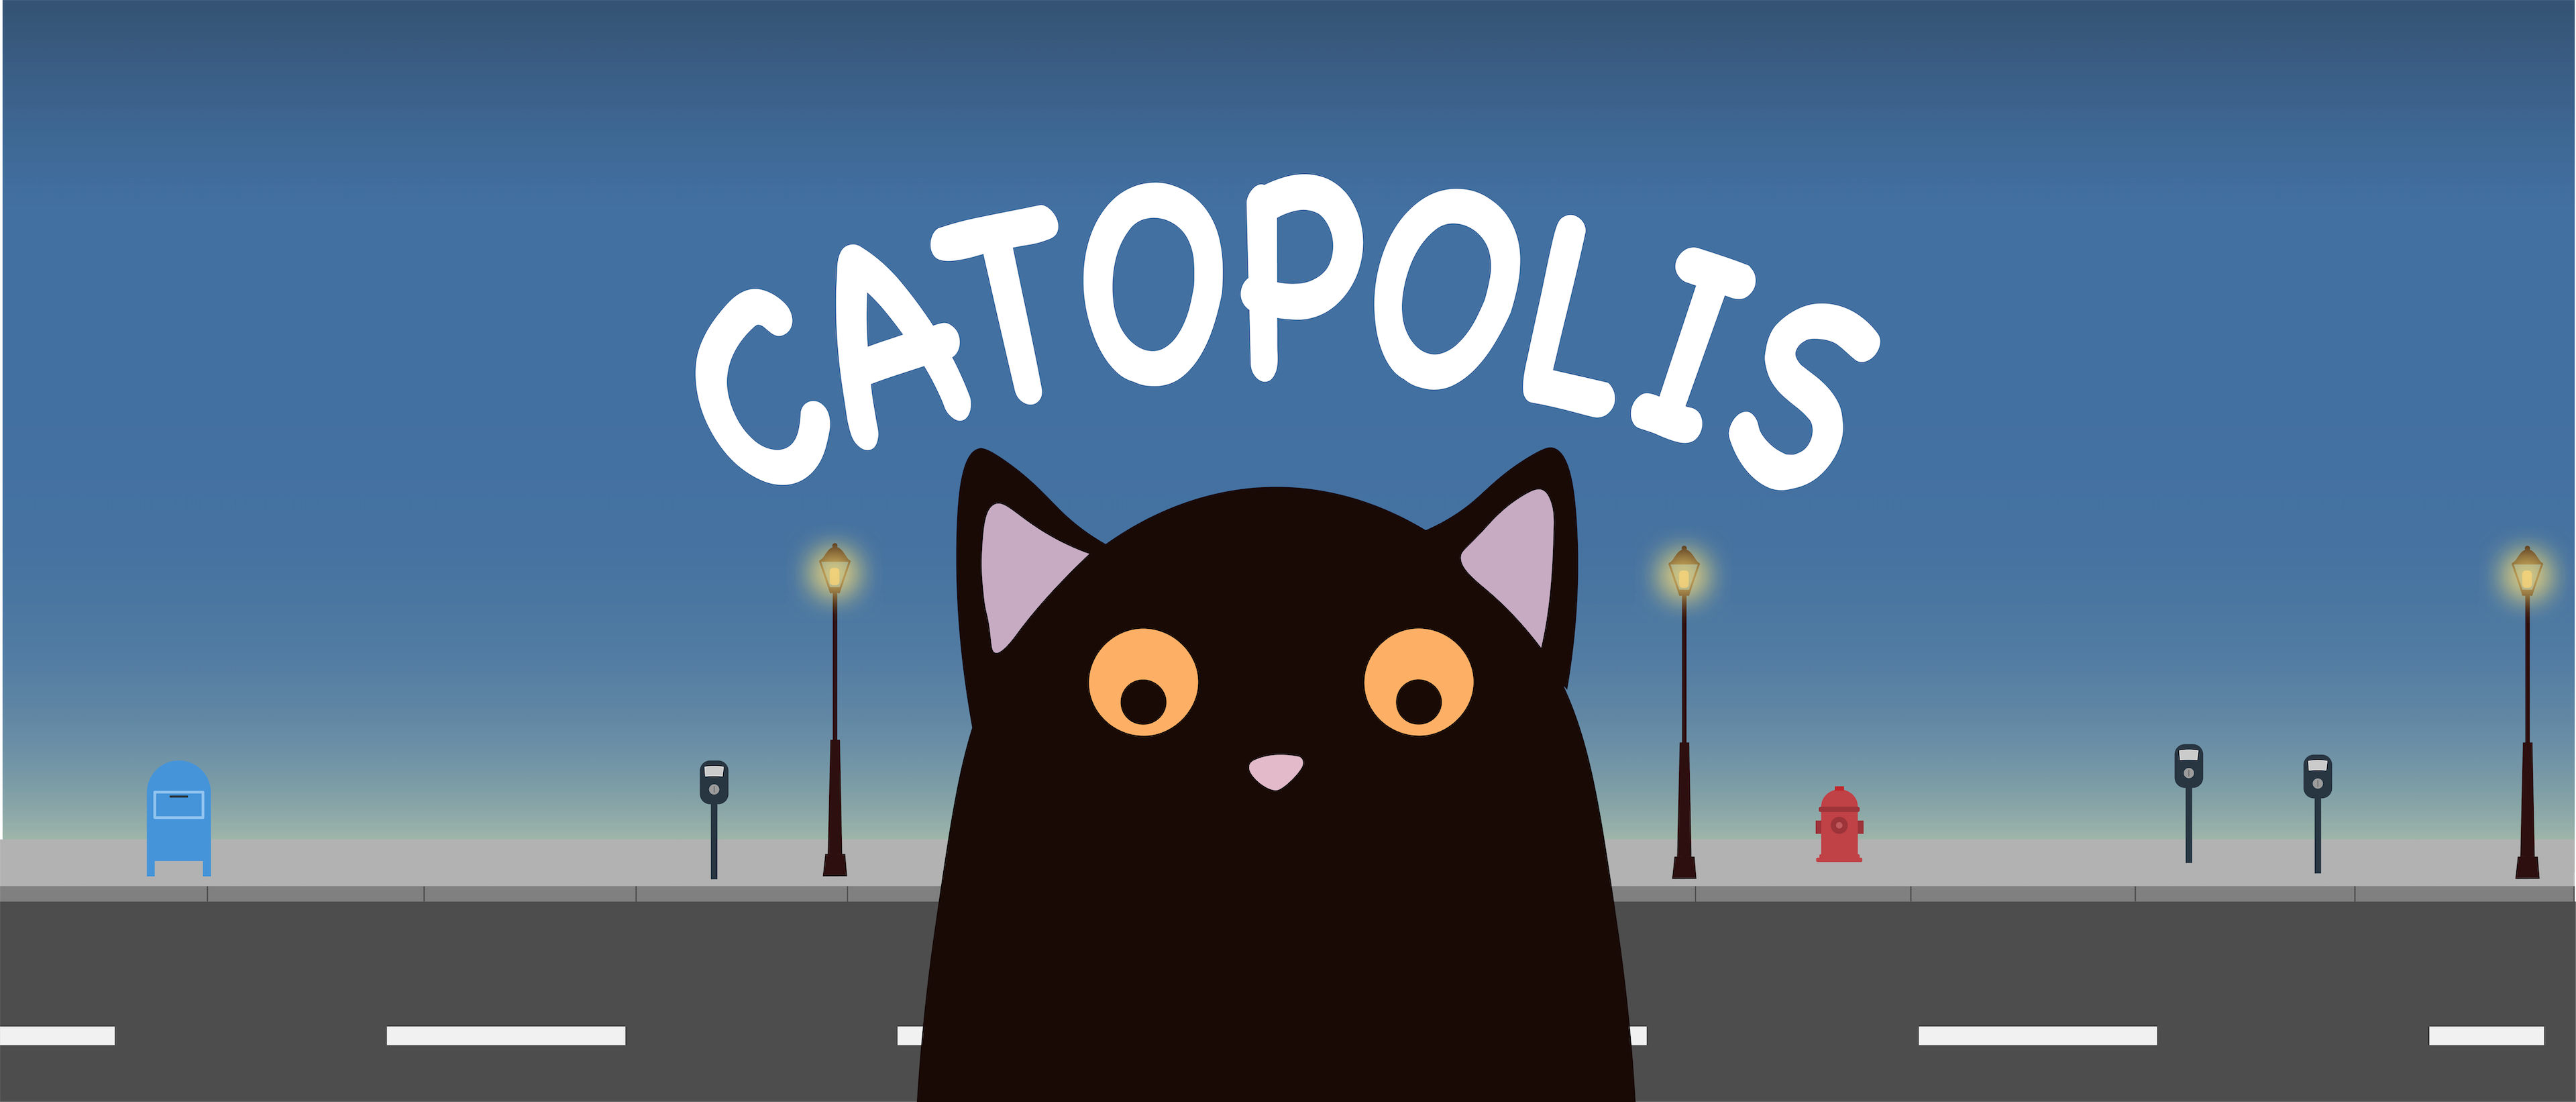 Catopolis